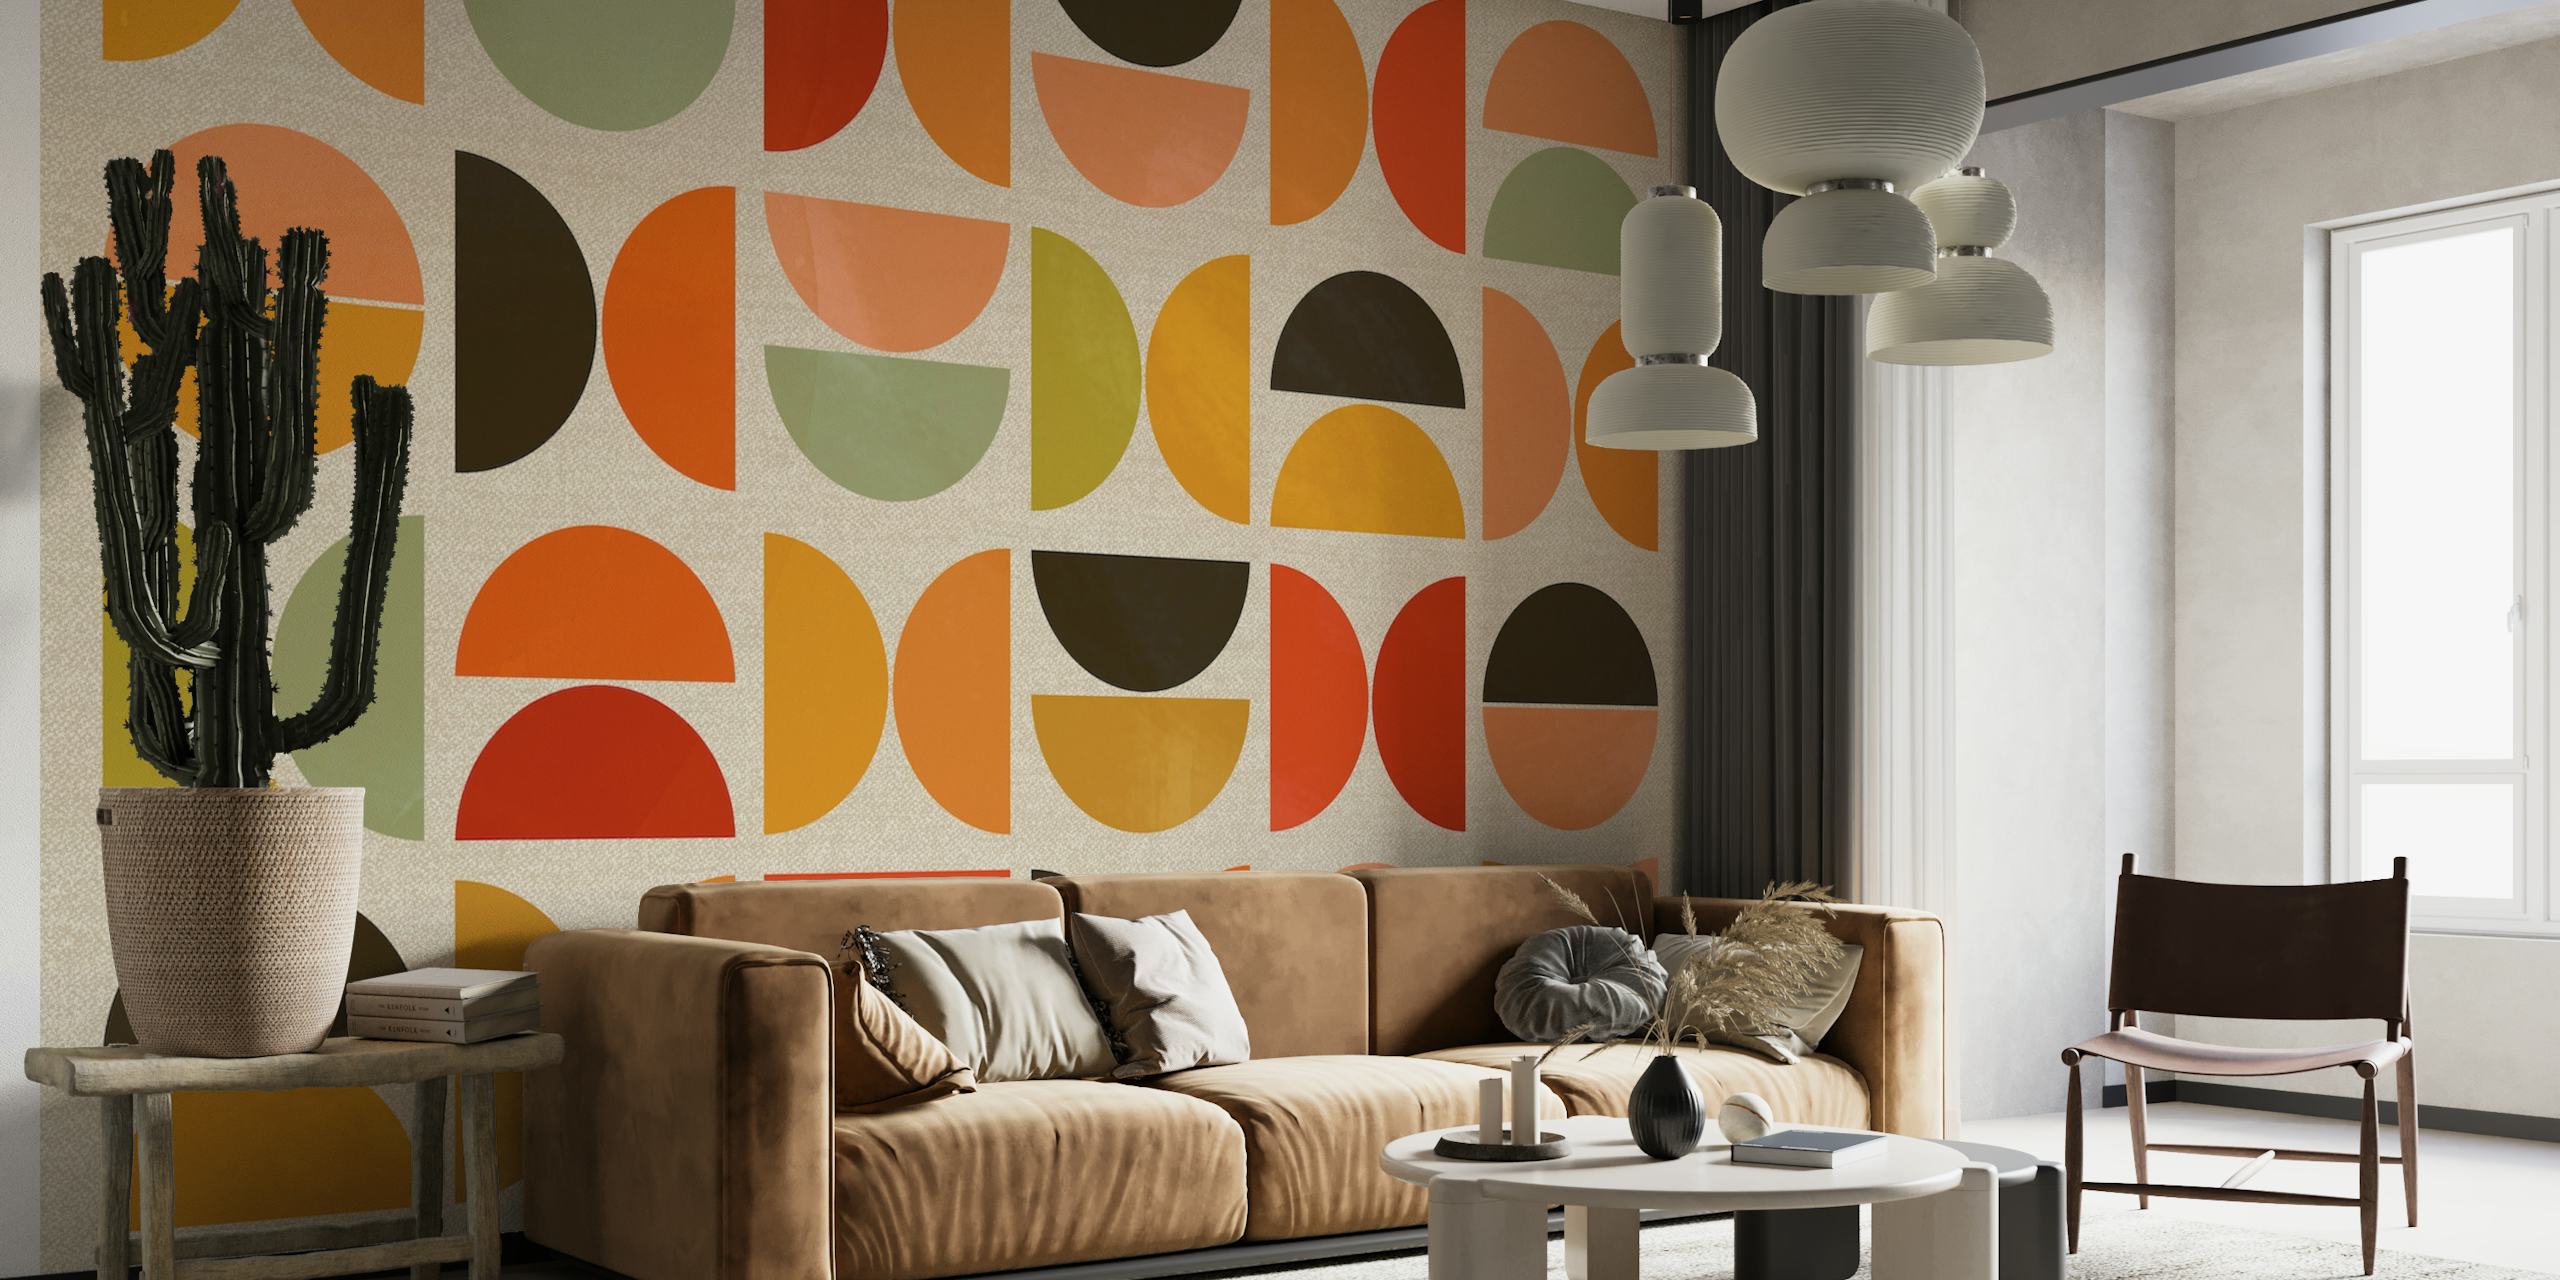 Abstracte halfronde vormen en streepjes in aquareltinten van oranje, groen en bruin op een crèmekleurige muurschildering